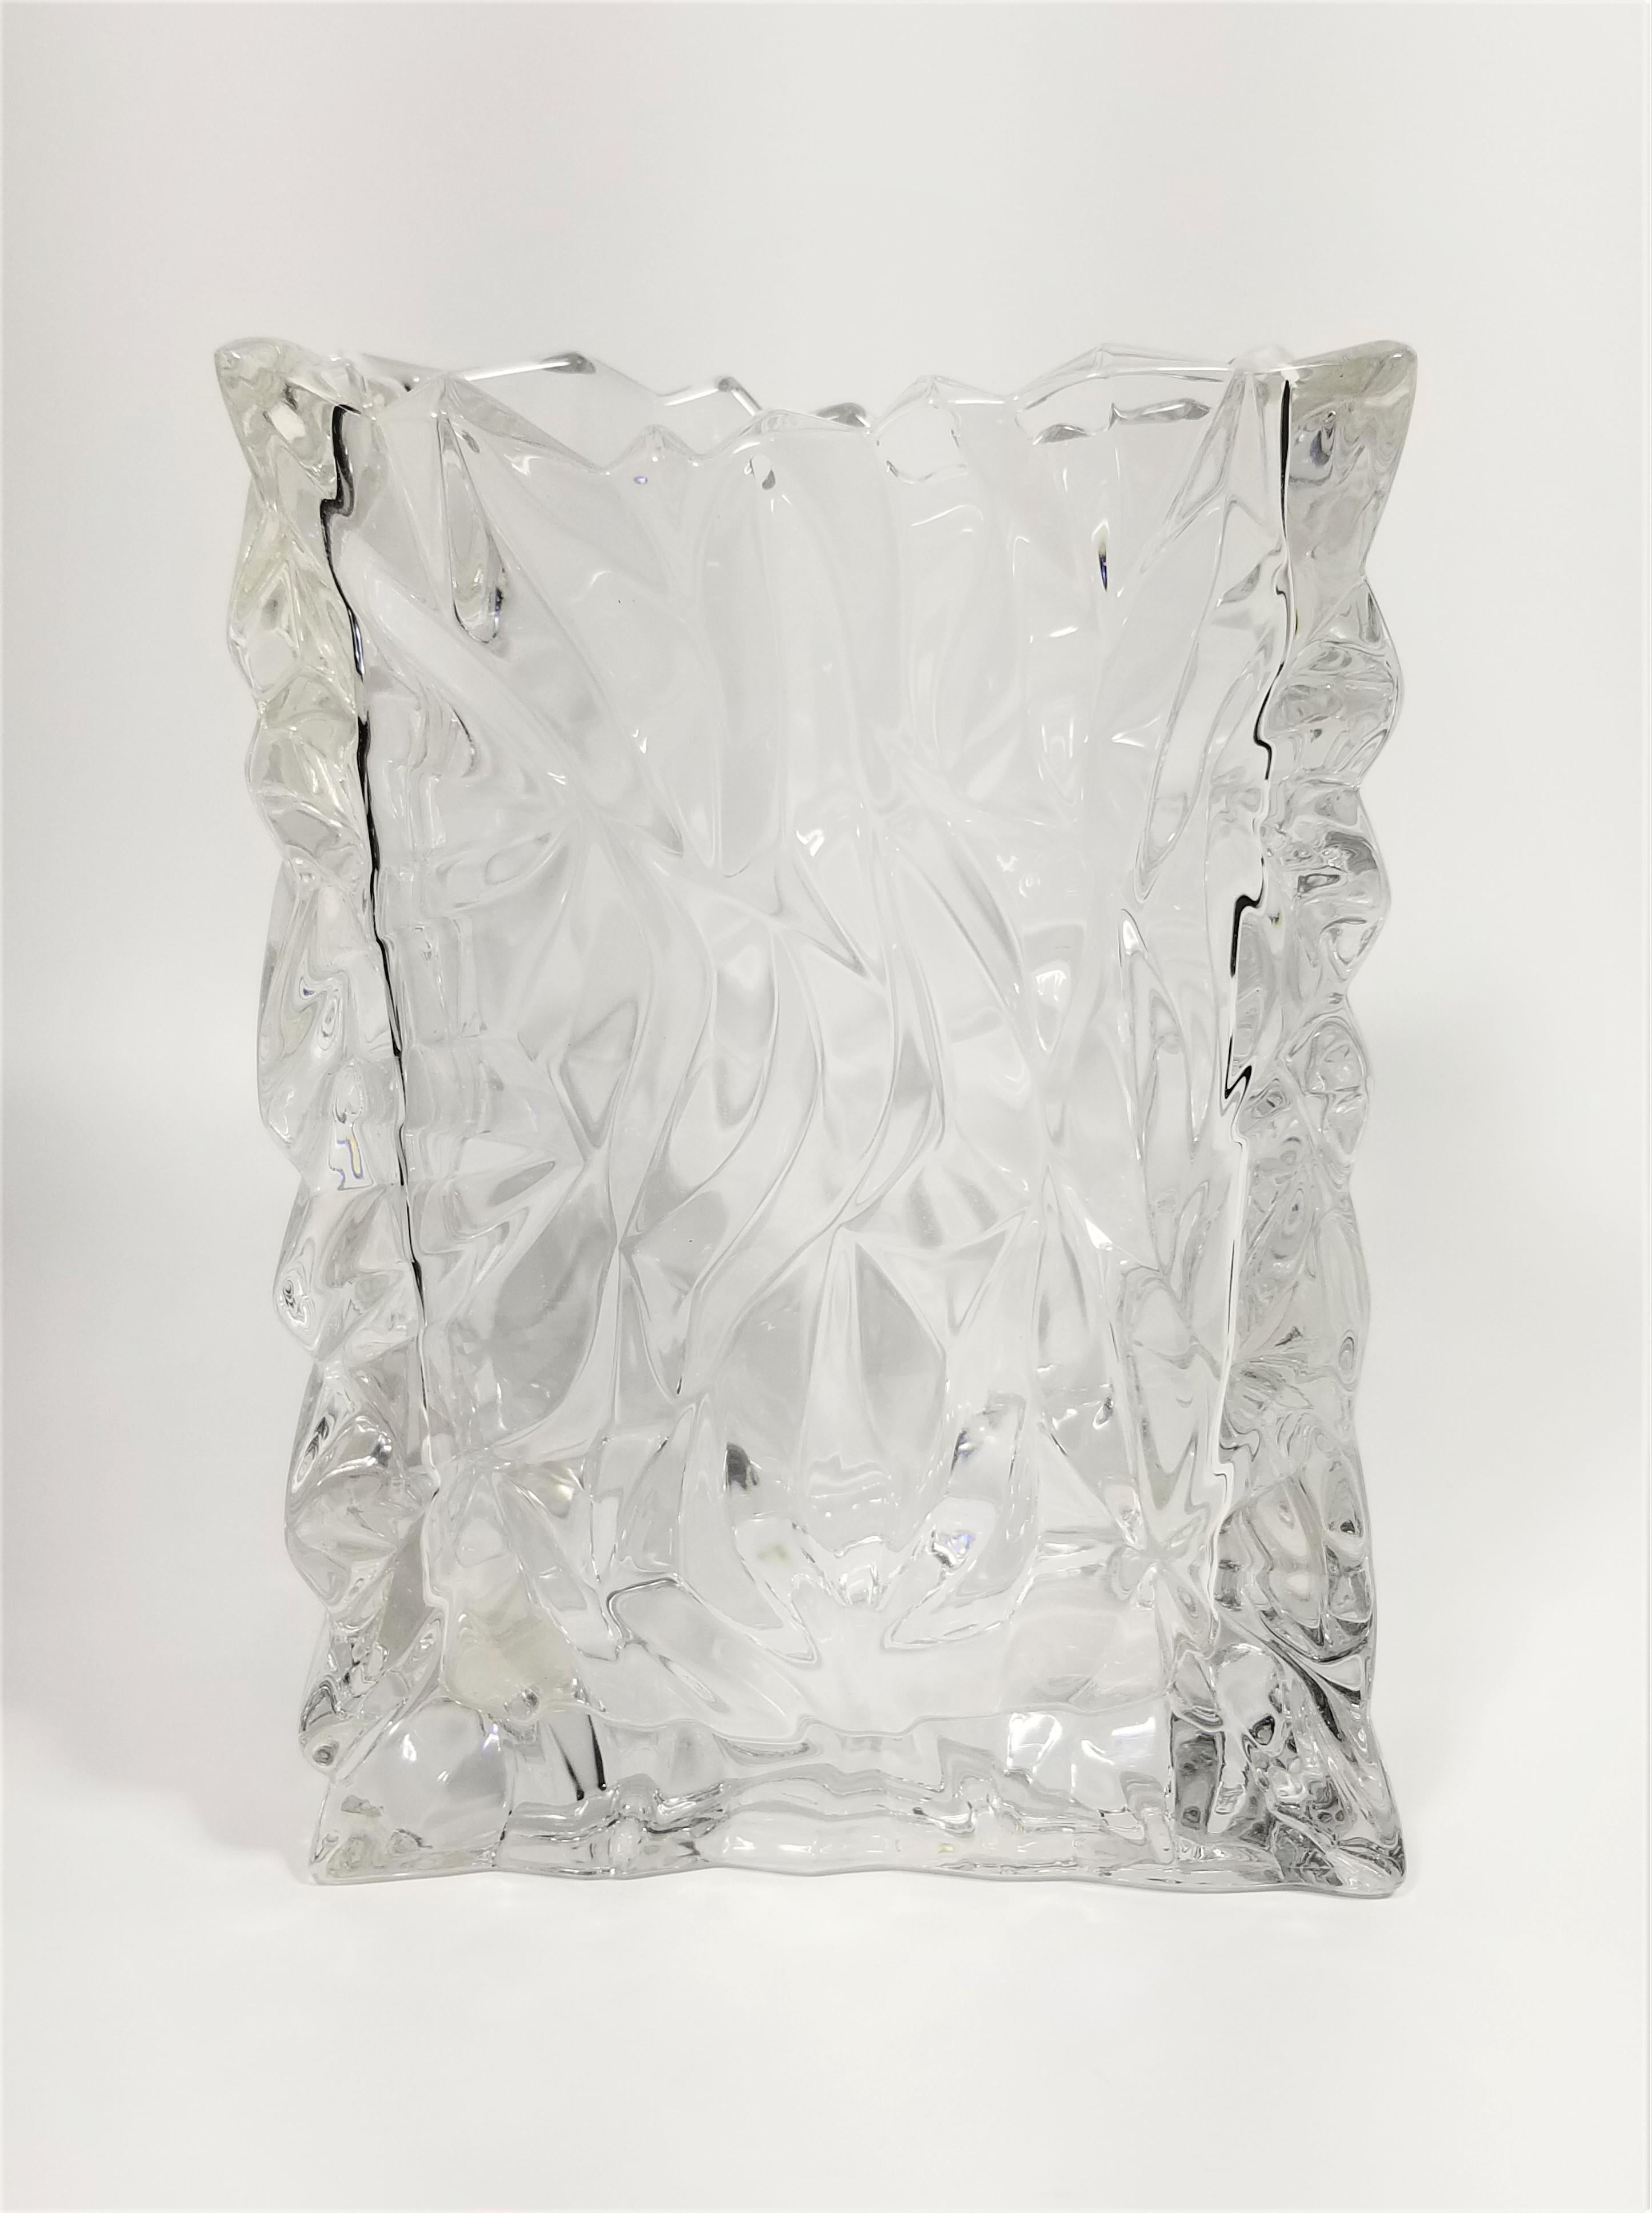 Mid-Century Modern Rosenthal Crystal Vase Brutalist Design Made in Germany For Sale